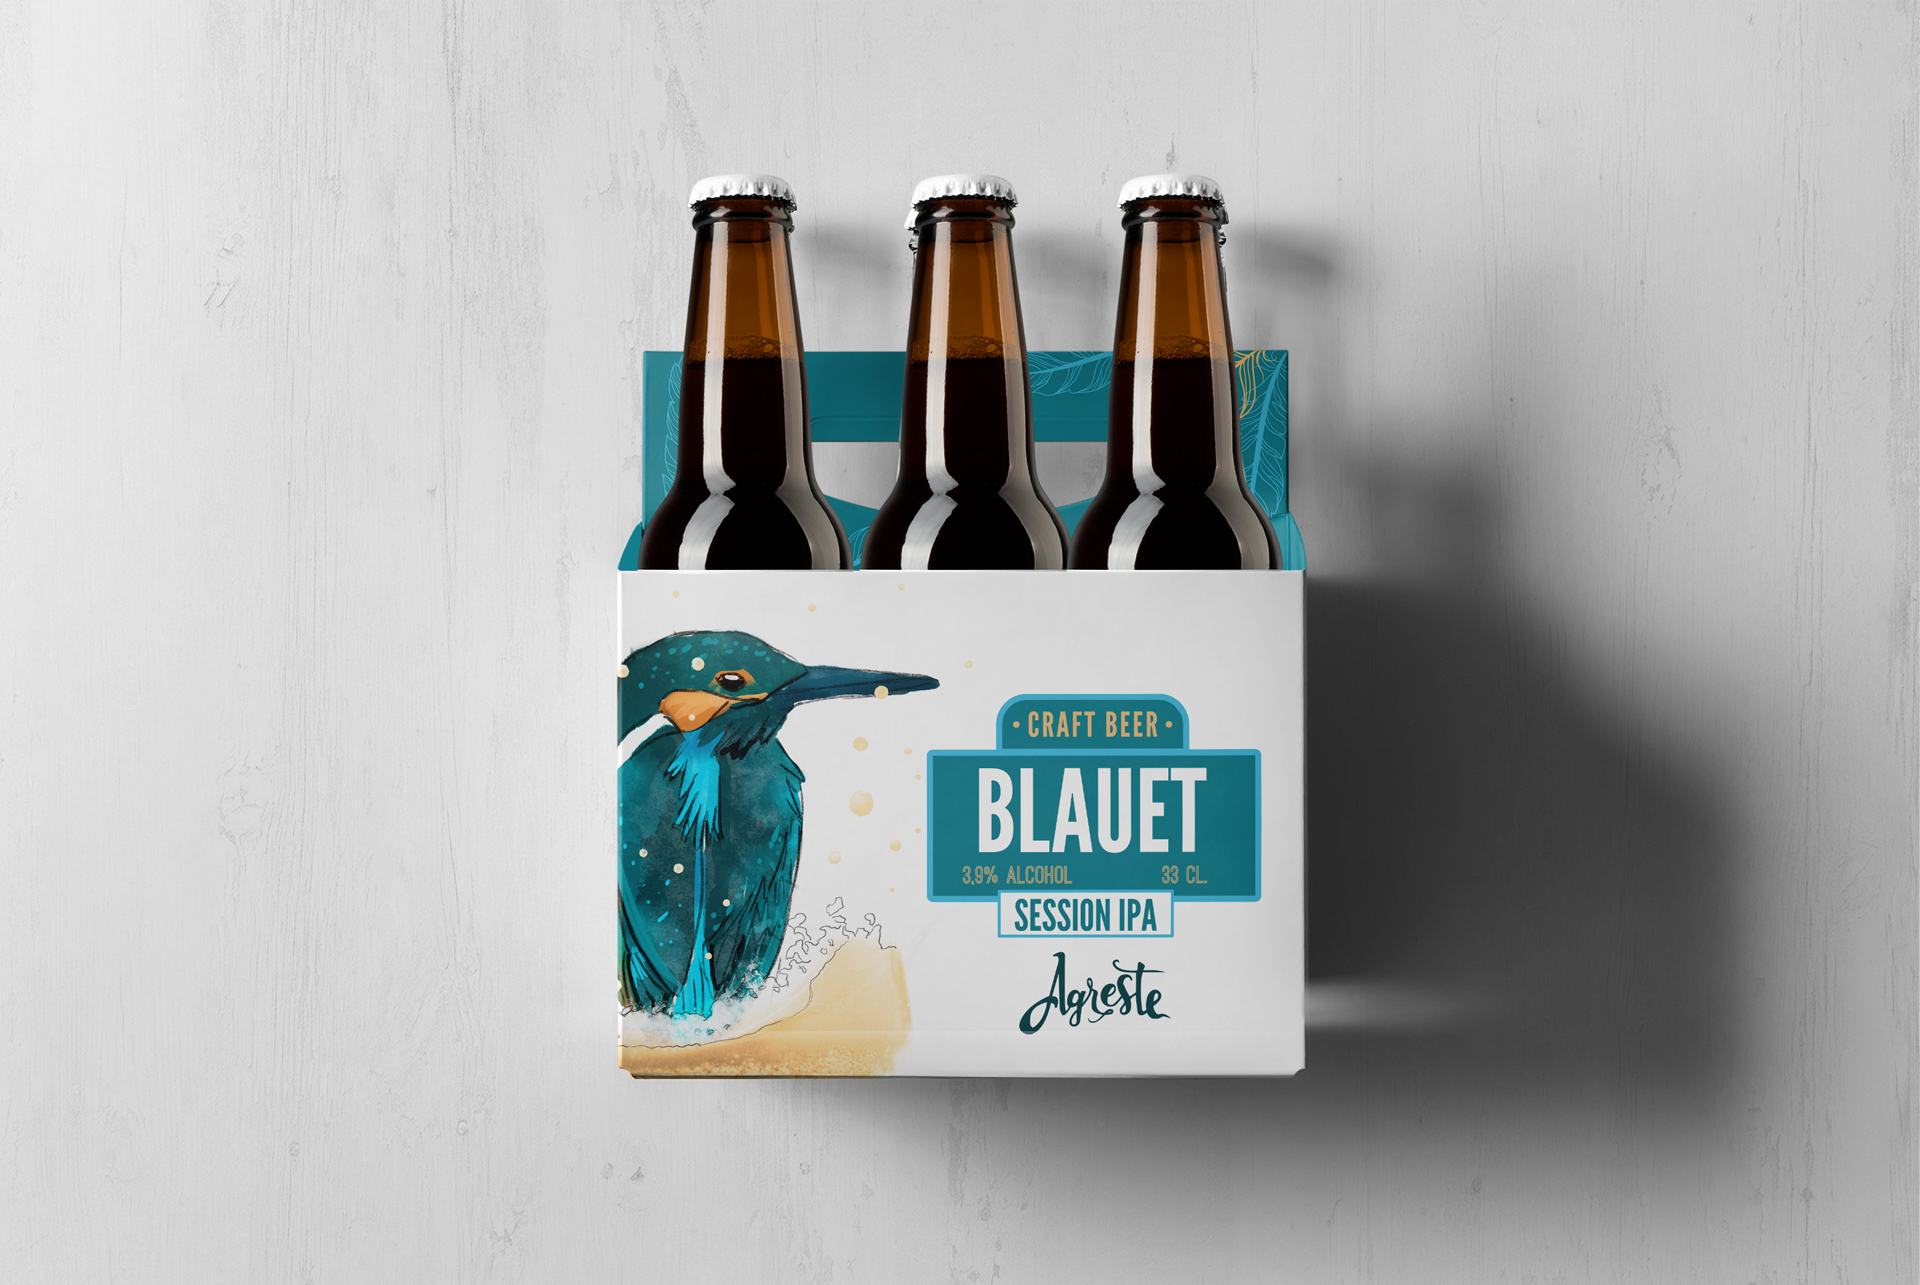 Diseño packaging Blauet